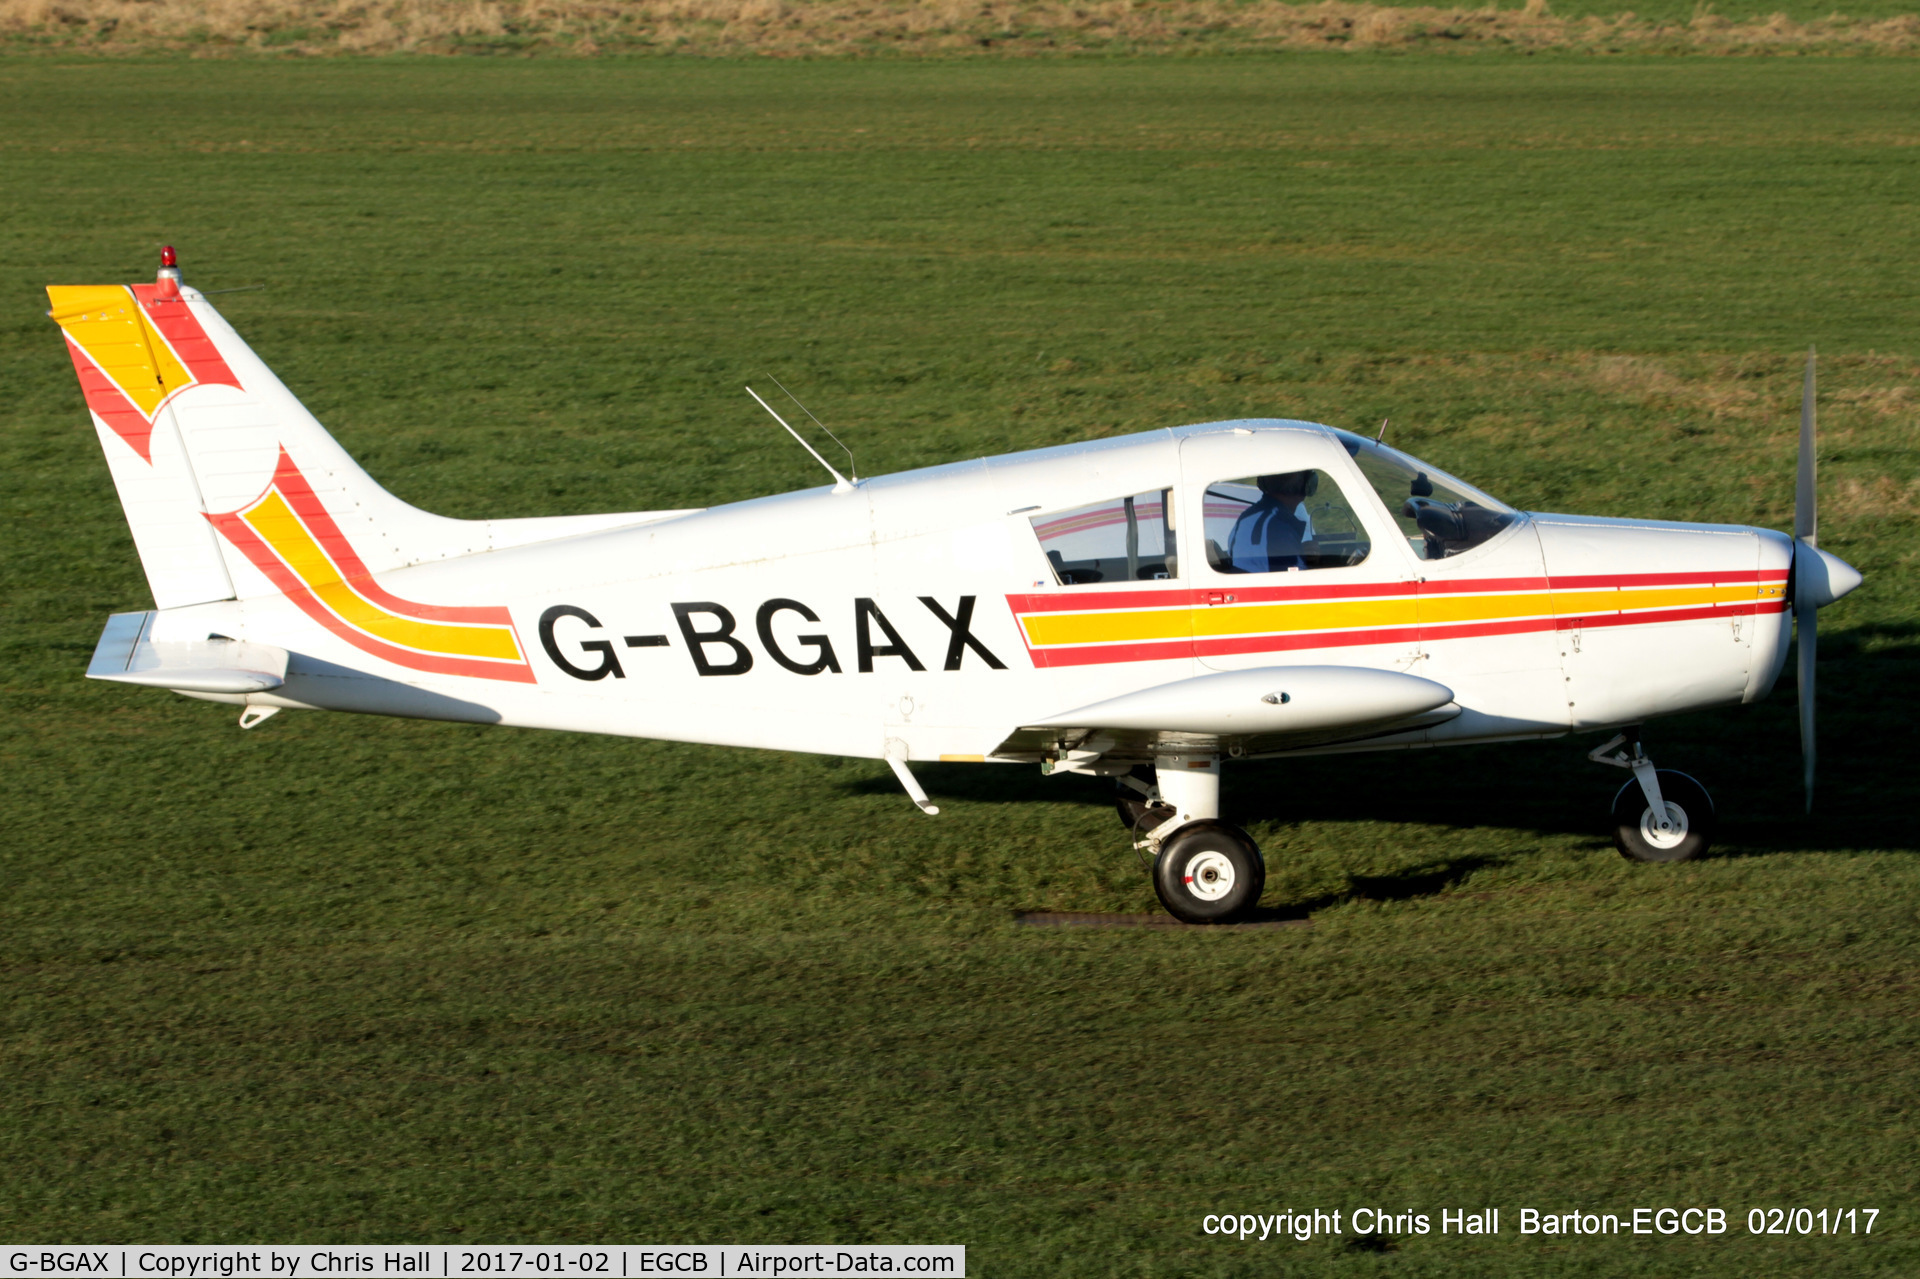 G-BGAX, 1973 Piper PA-28-140 Cherokee C/N 28-7325409, at Barton